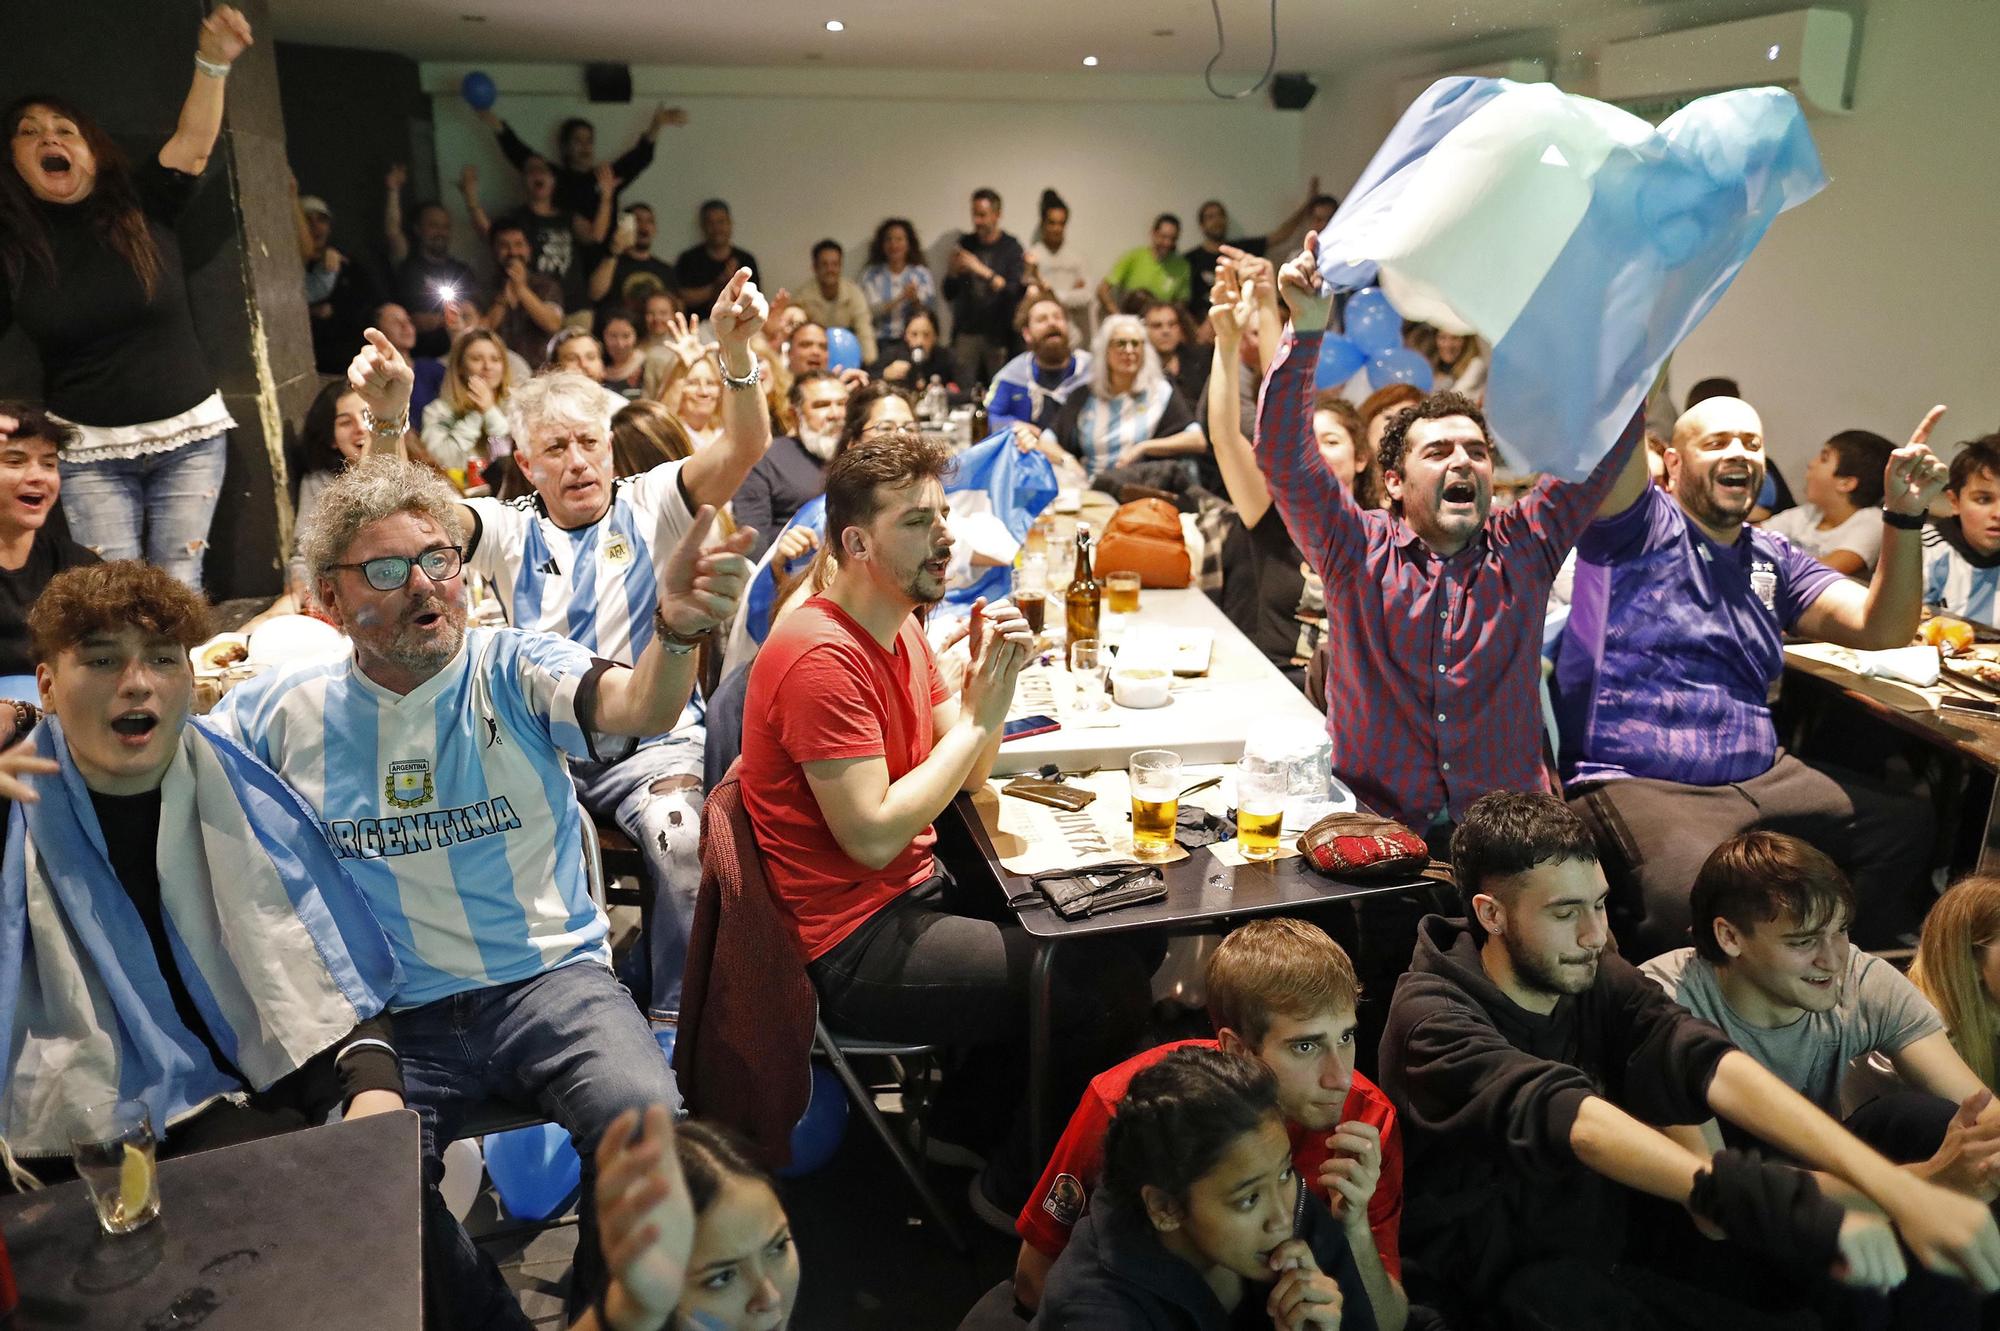 Les imatges de l'afició argentina celebrant el mundial a Girona